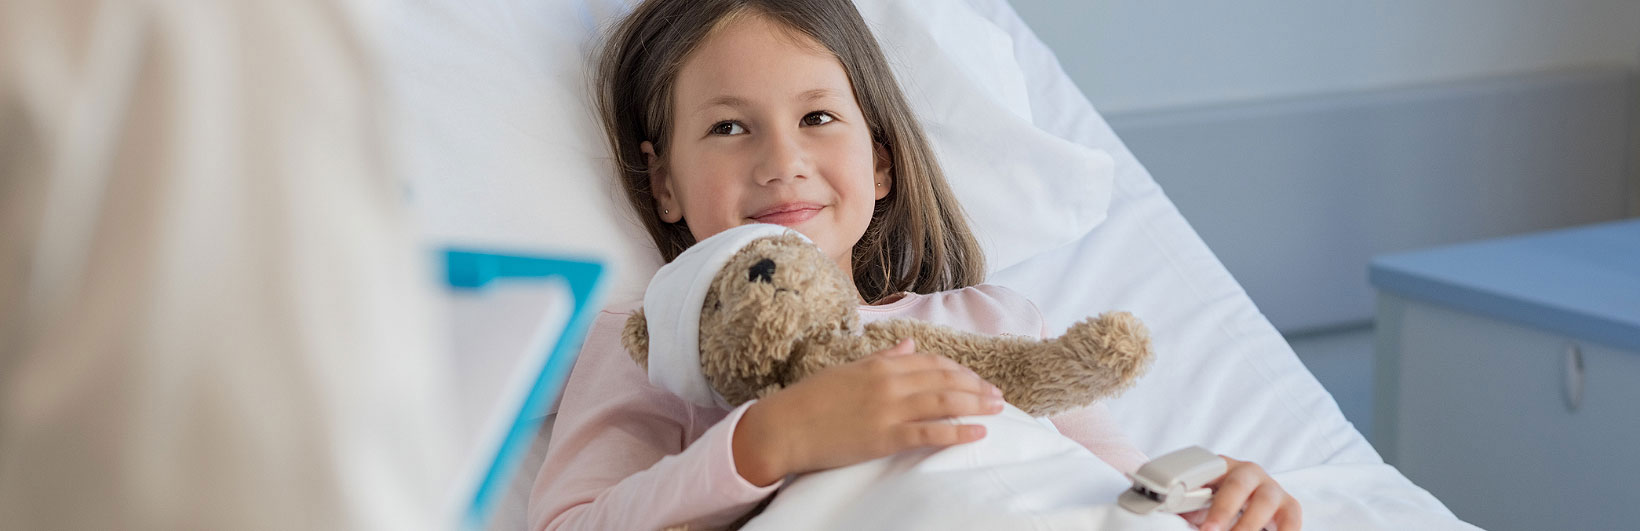 Pediatric Proton Therapy for Cancer in Children